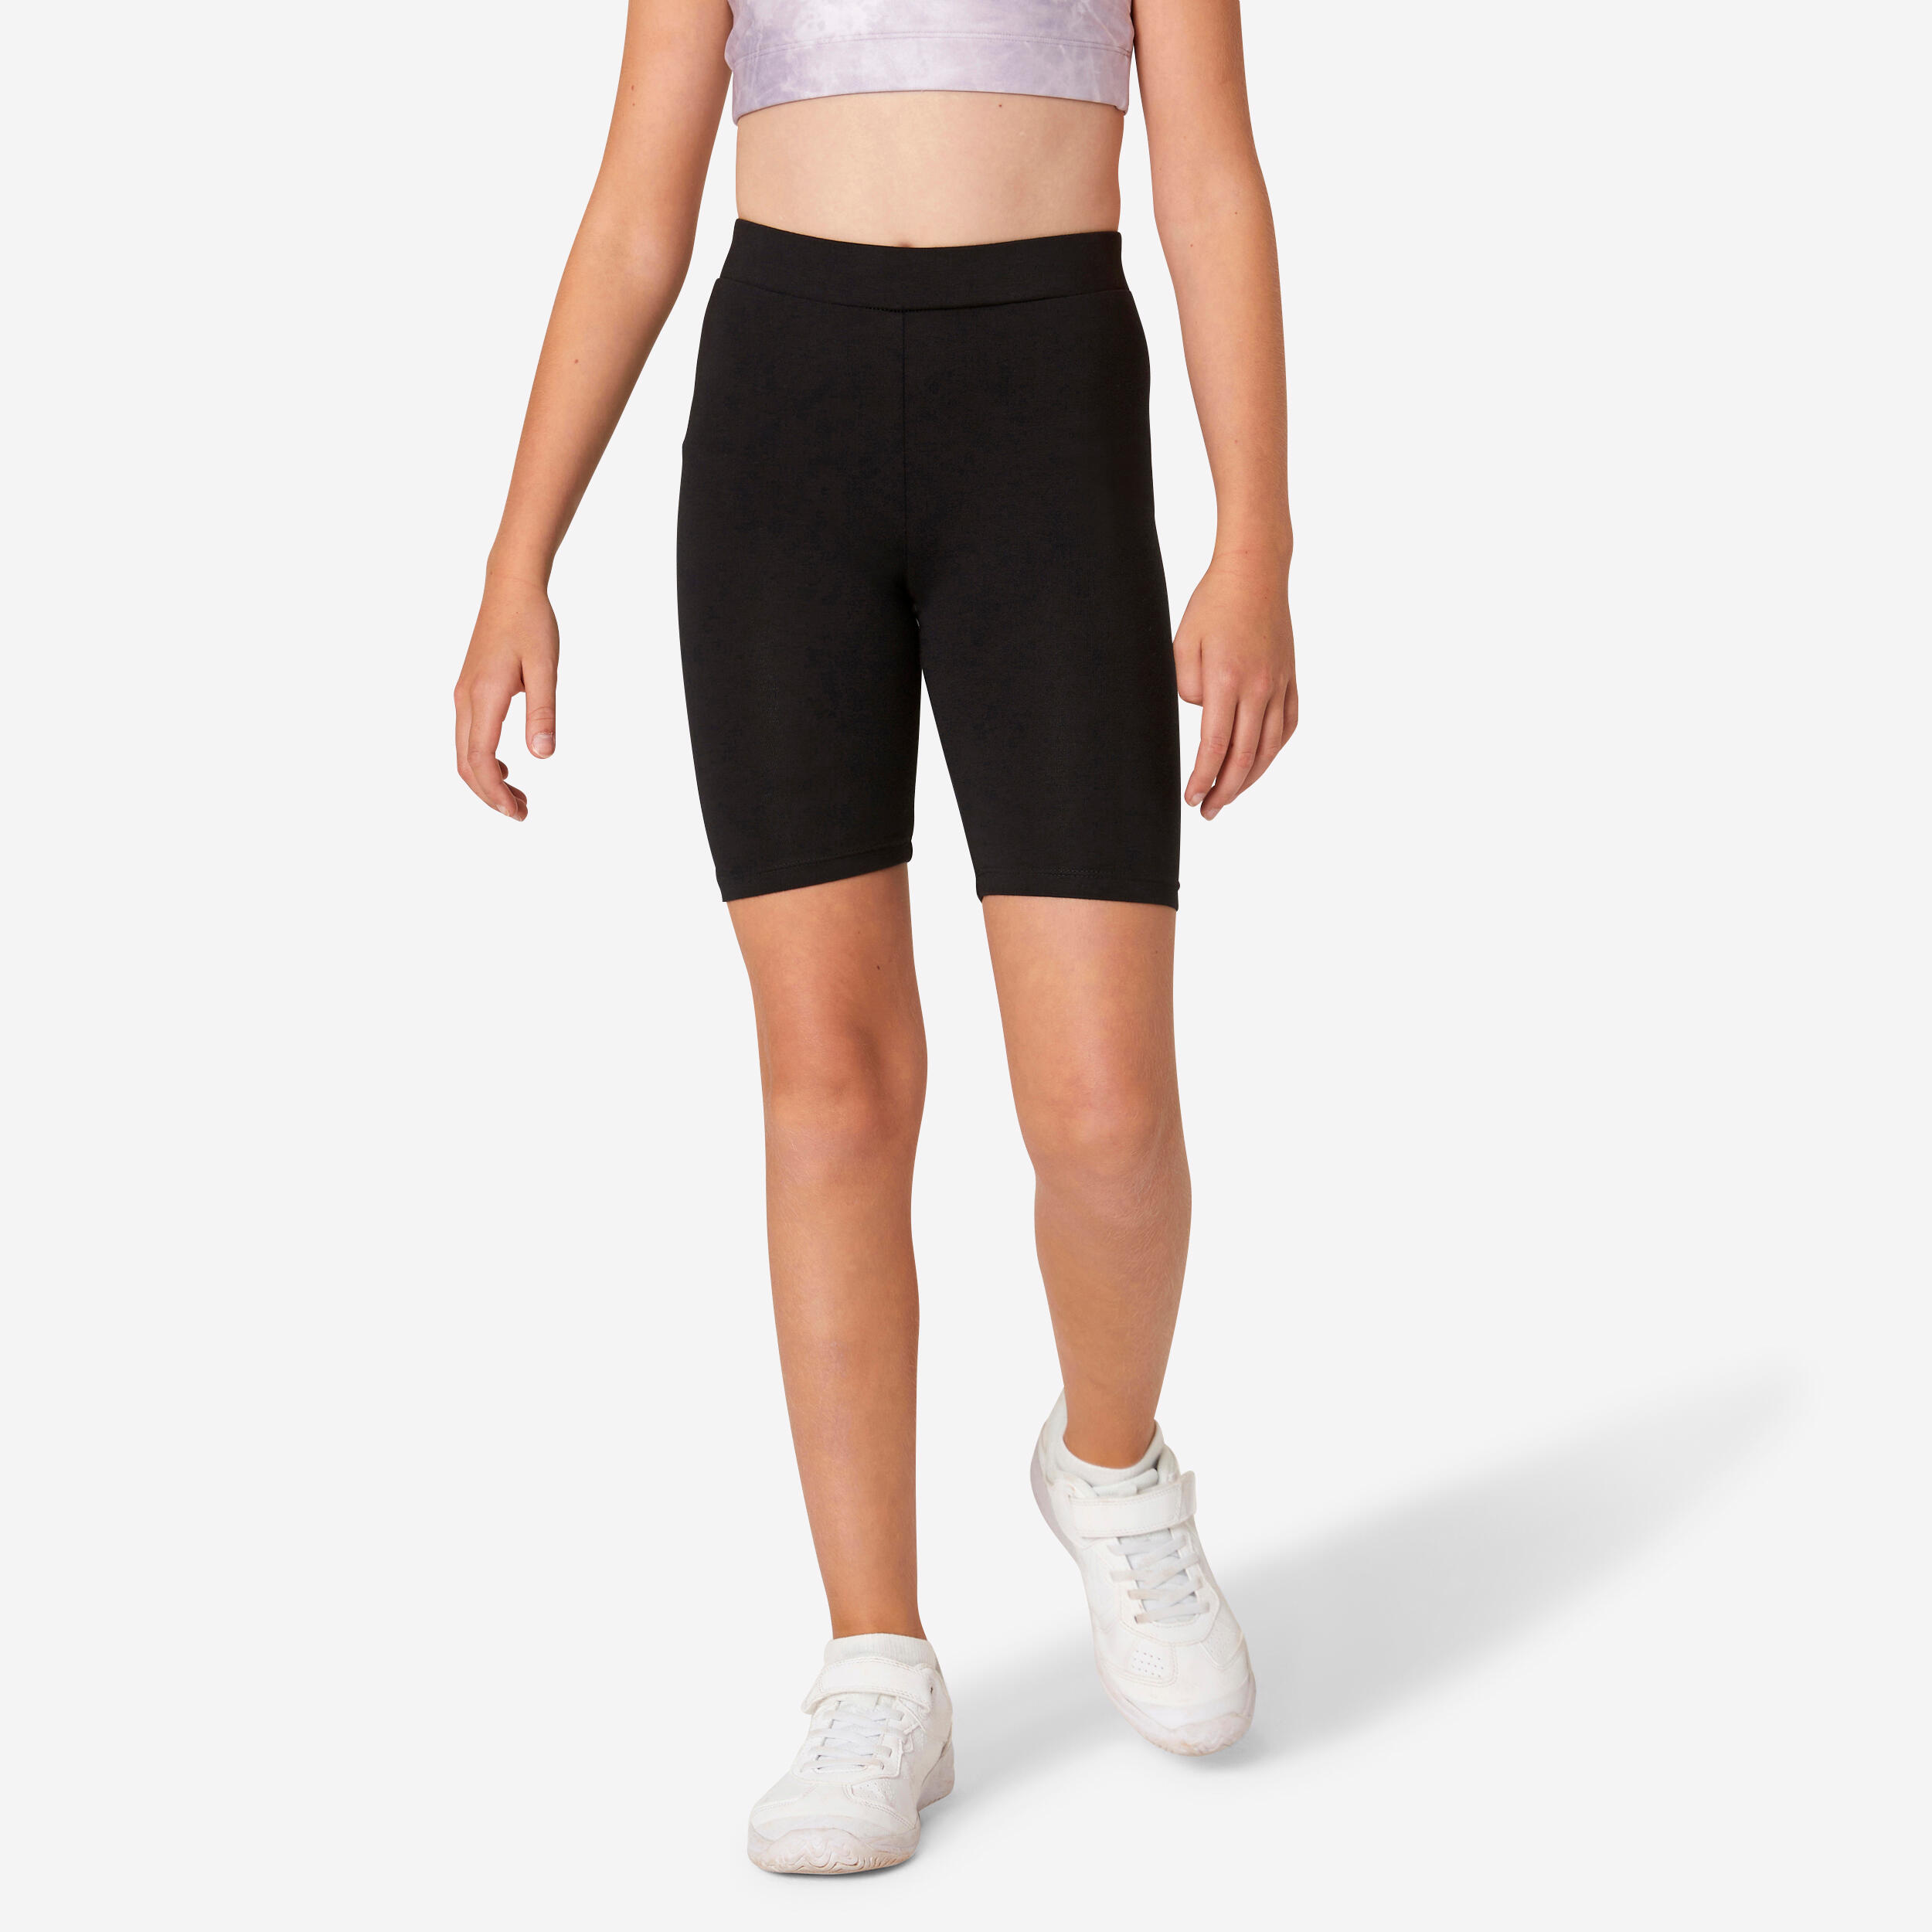 Girls' Cotton Cycling Shorts - Black 1/4